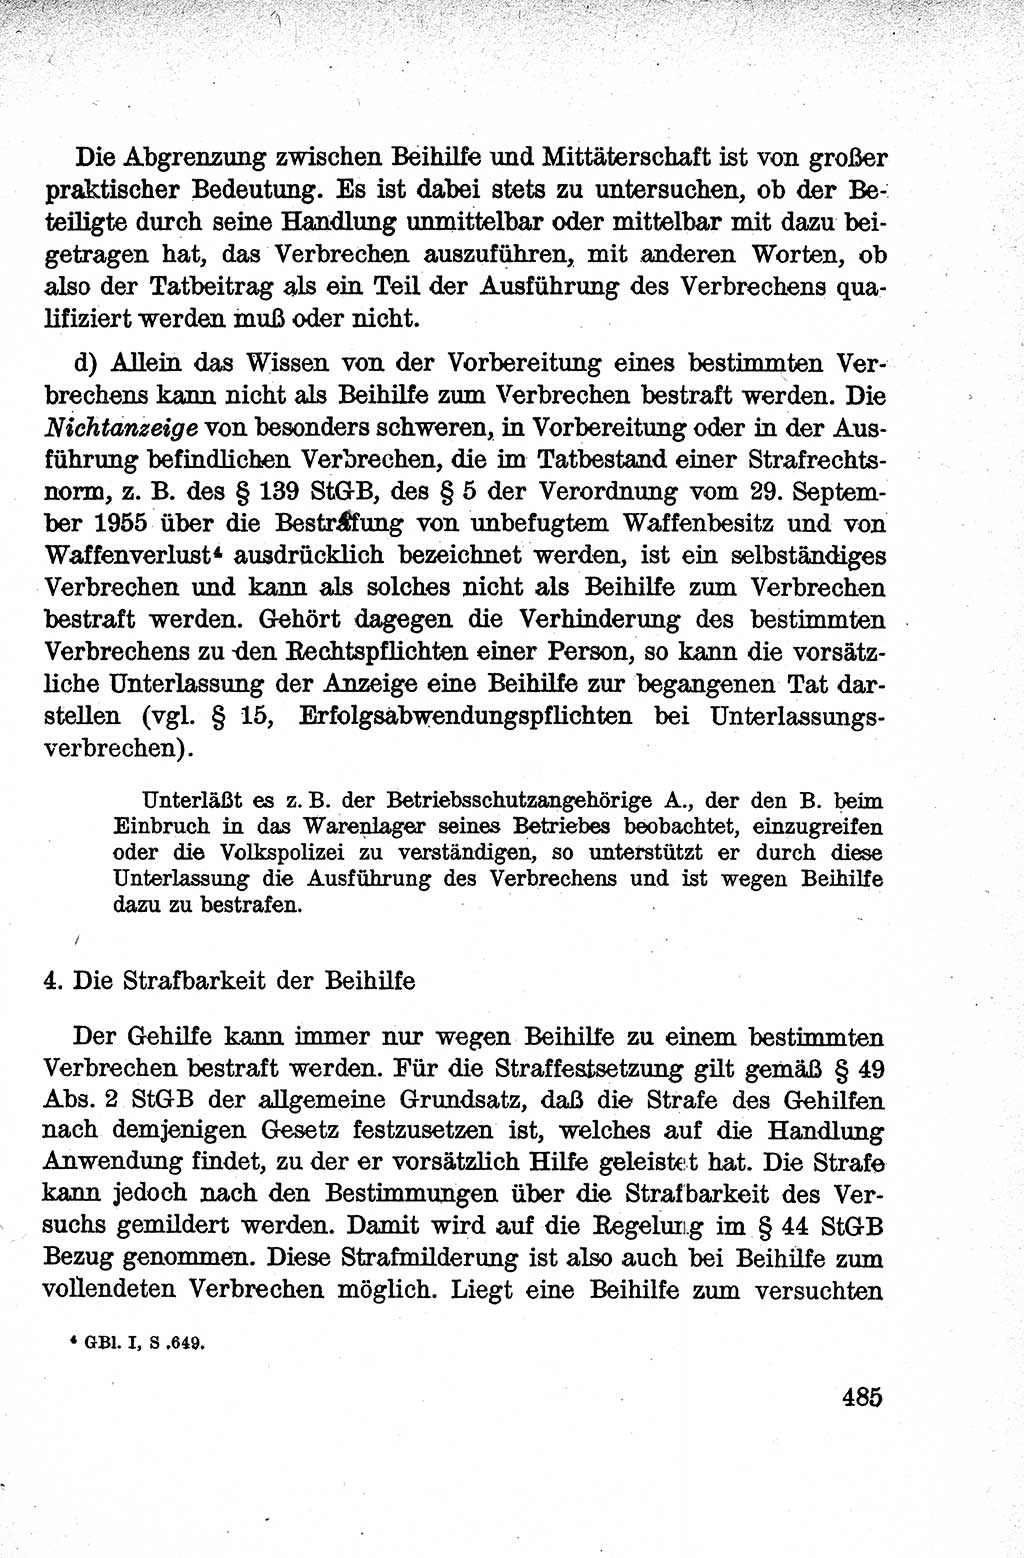 Lehrbuch des Strafrechts der Deutschen Demokratischen Republik (DDR), Allgemeiner Teil 1959, Seite 485 (Lb. Strafr. DDR AT 1959, S. 485)